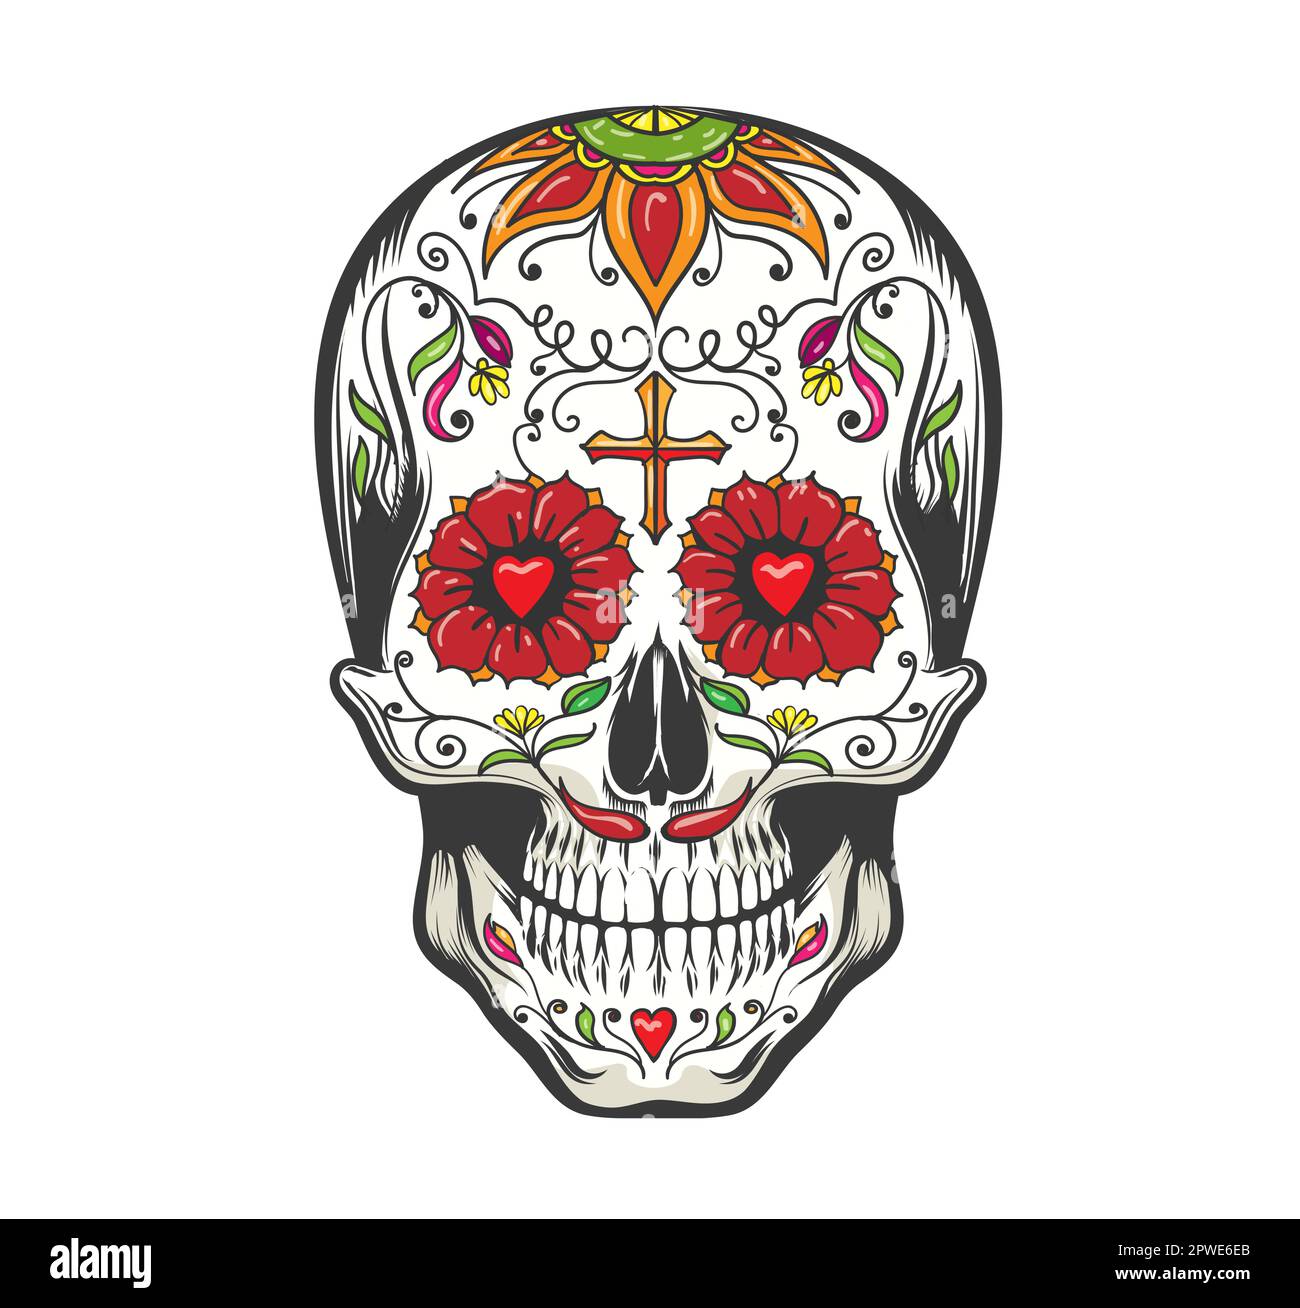 Giorno del Morto coloratissimo cranio di zucchero con ornamento floreale isolato su bianco. Illustrazione vettoriale Illustrazione Vettoriale